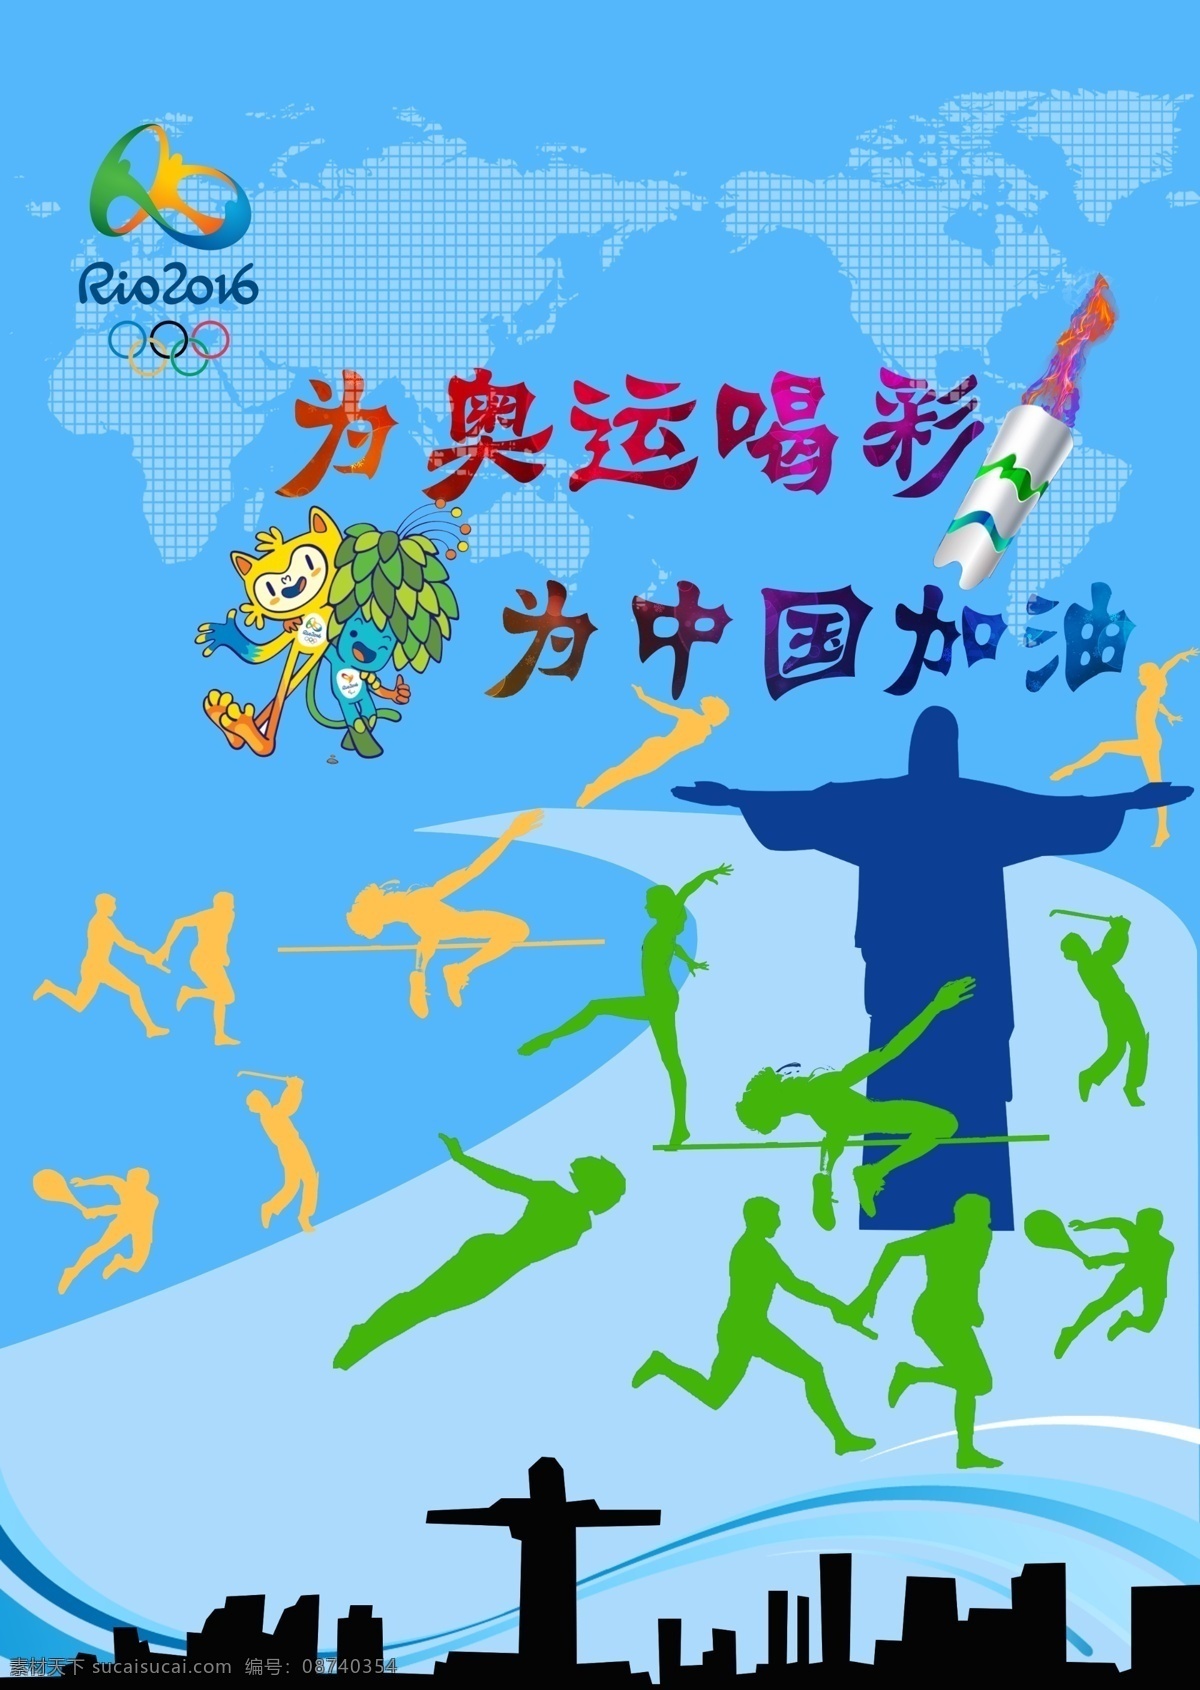 里约奥运会 奥运 加油 火炬 运动 剪影 青色 天蓝色